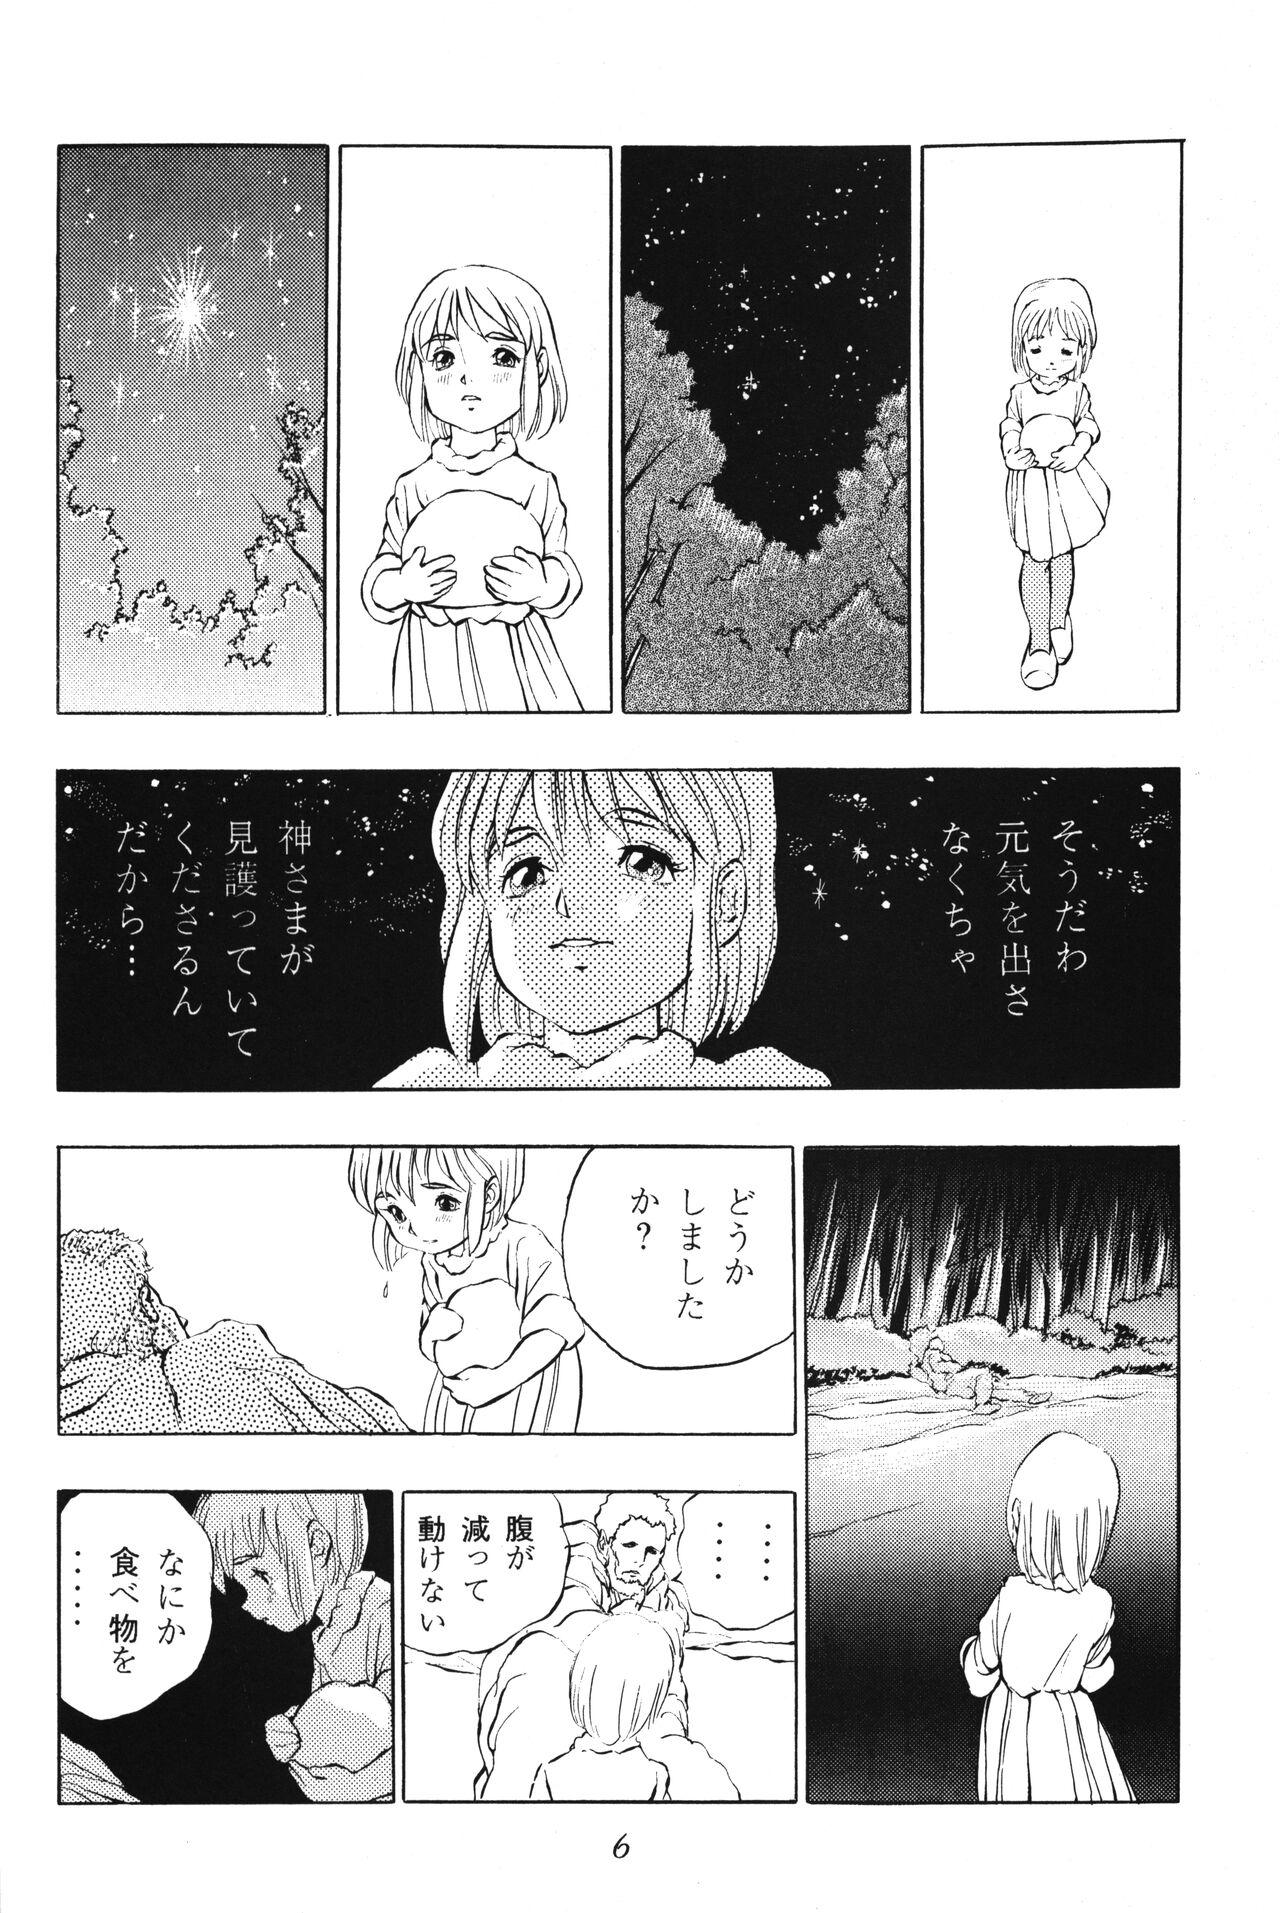 Coroa Tousaku Douwa-shuu 2.5 Hoshi no Ginka - Original Wam - Page 6